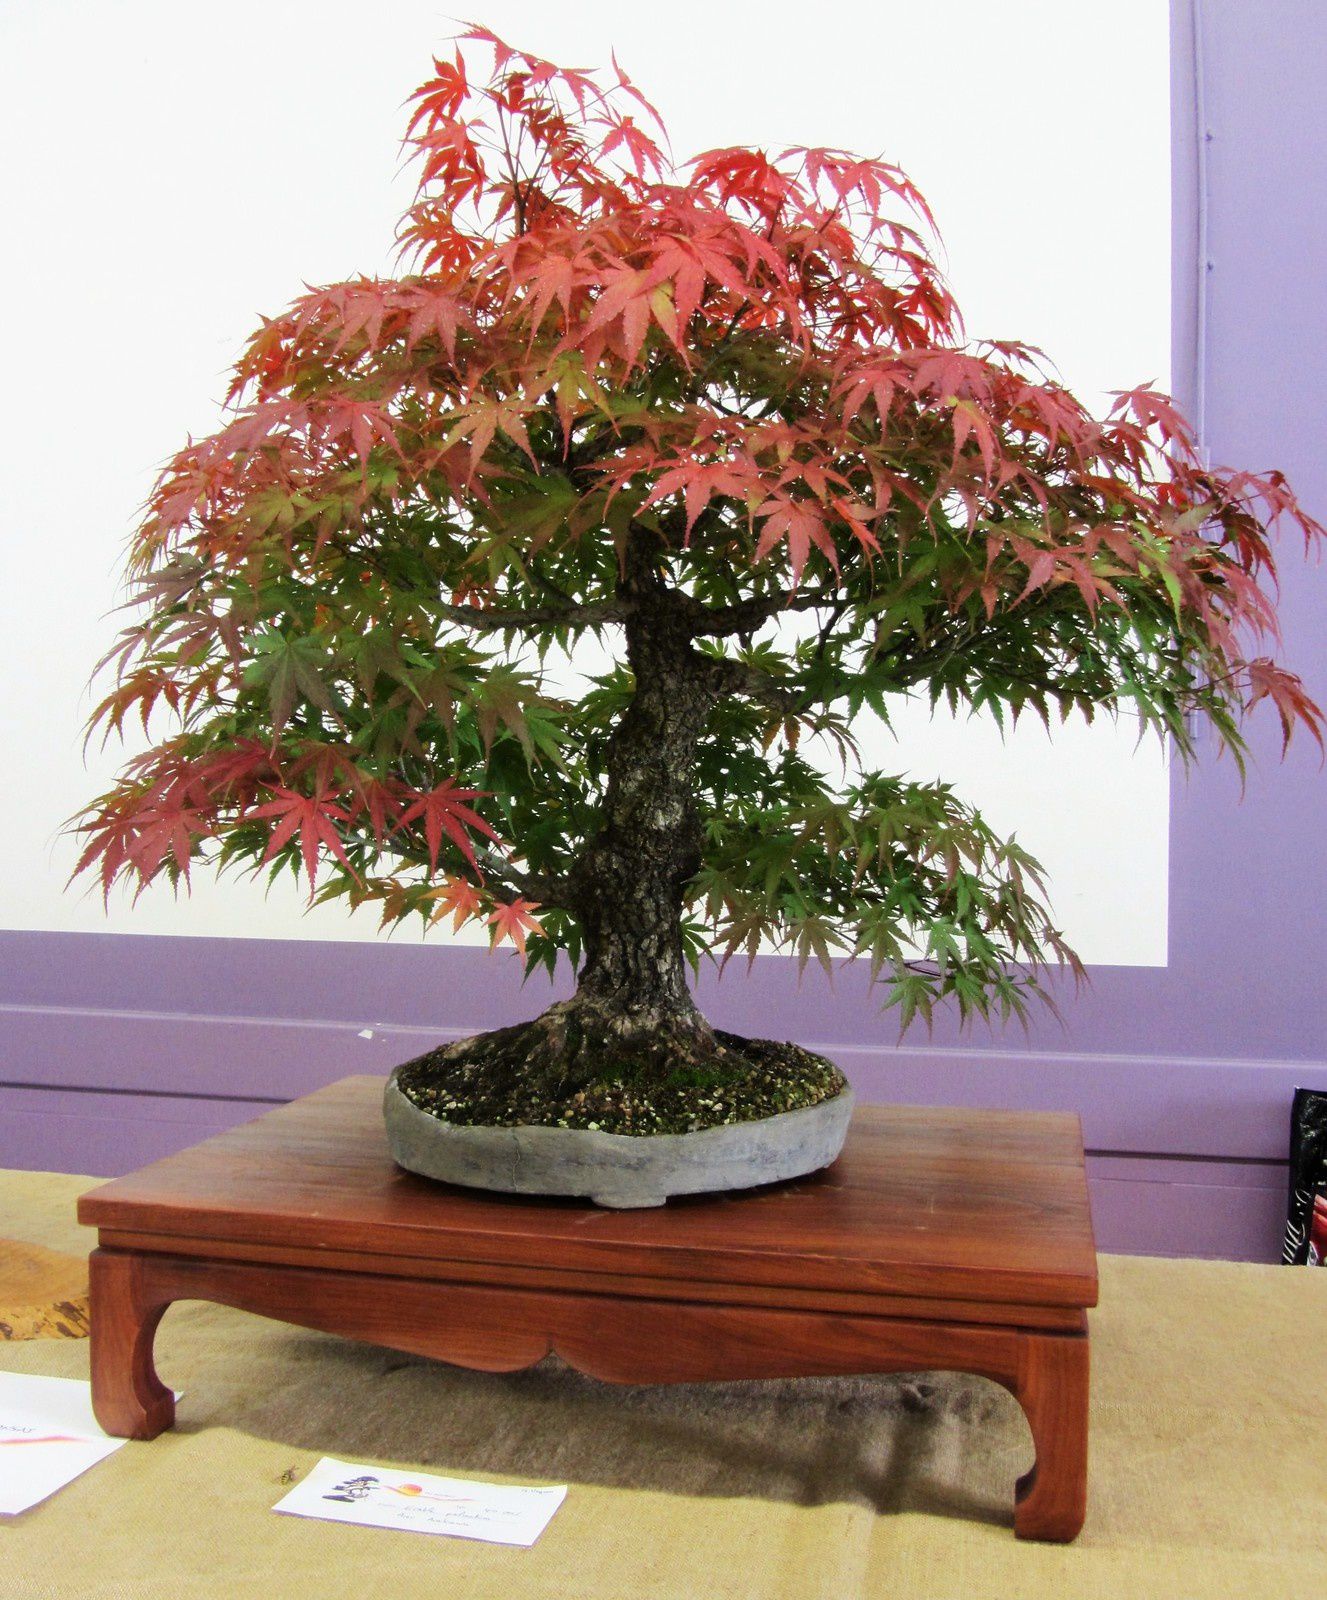 Nous avons pu admirer quelques beaux specimens de bonsaïs, comme ce magnifique érable paré de son habit d'automne.